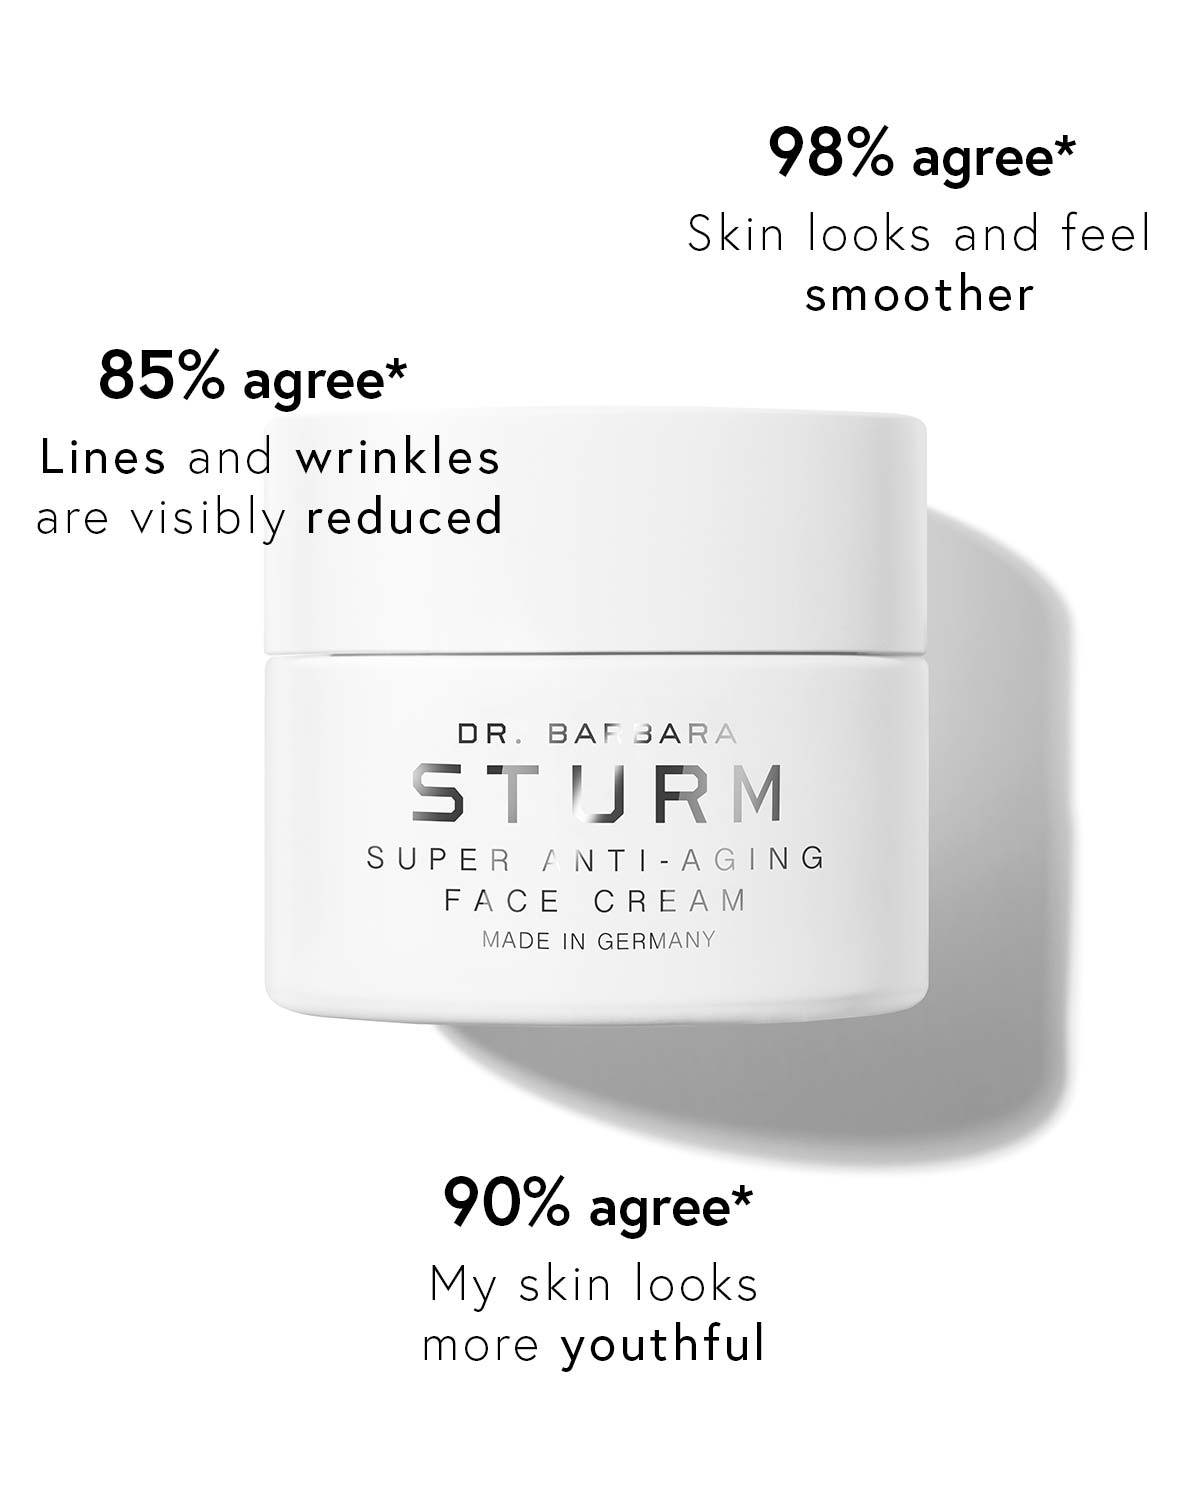 super anti-aging face cream